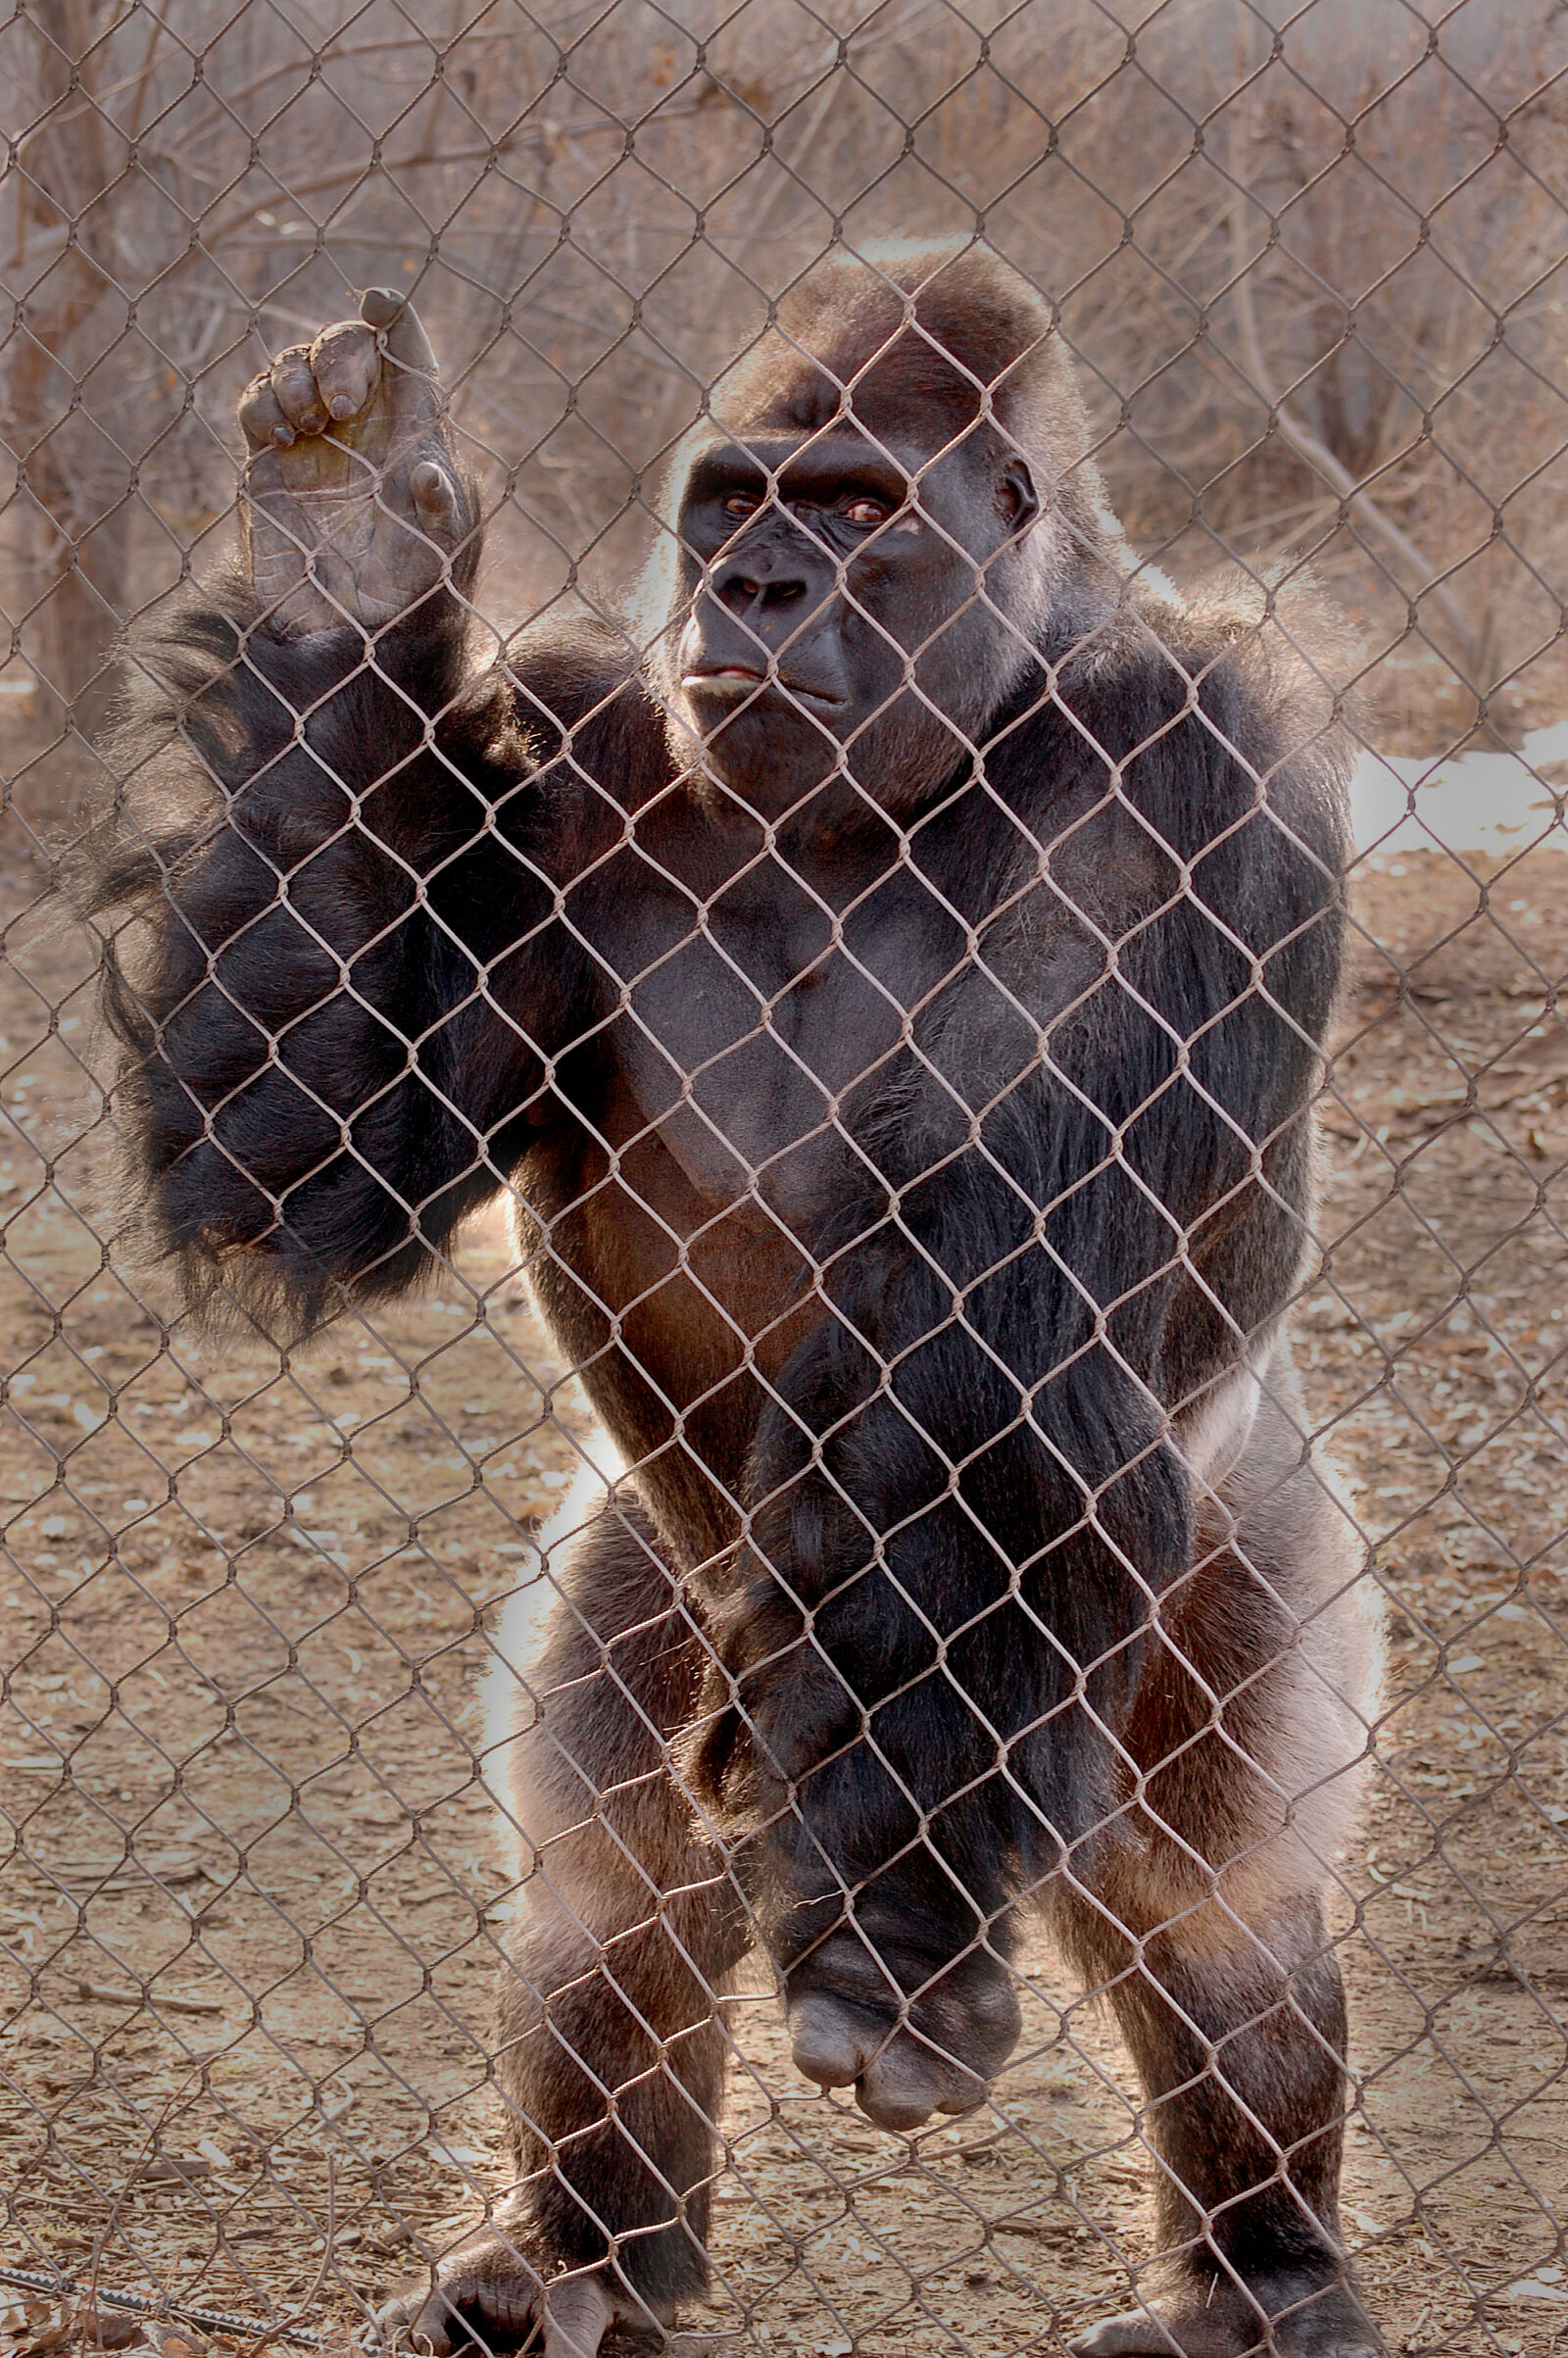 Nikon D40 + Nikon AF-S DX Nikkor 55-200mm F4-5.6G VR sample photo. Zoo, gorilla, ape, monkey photography